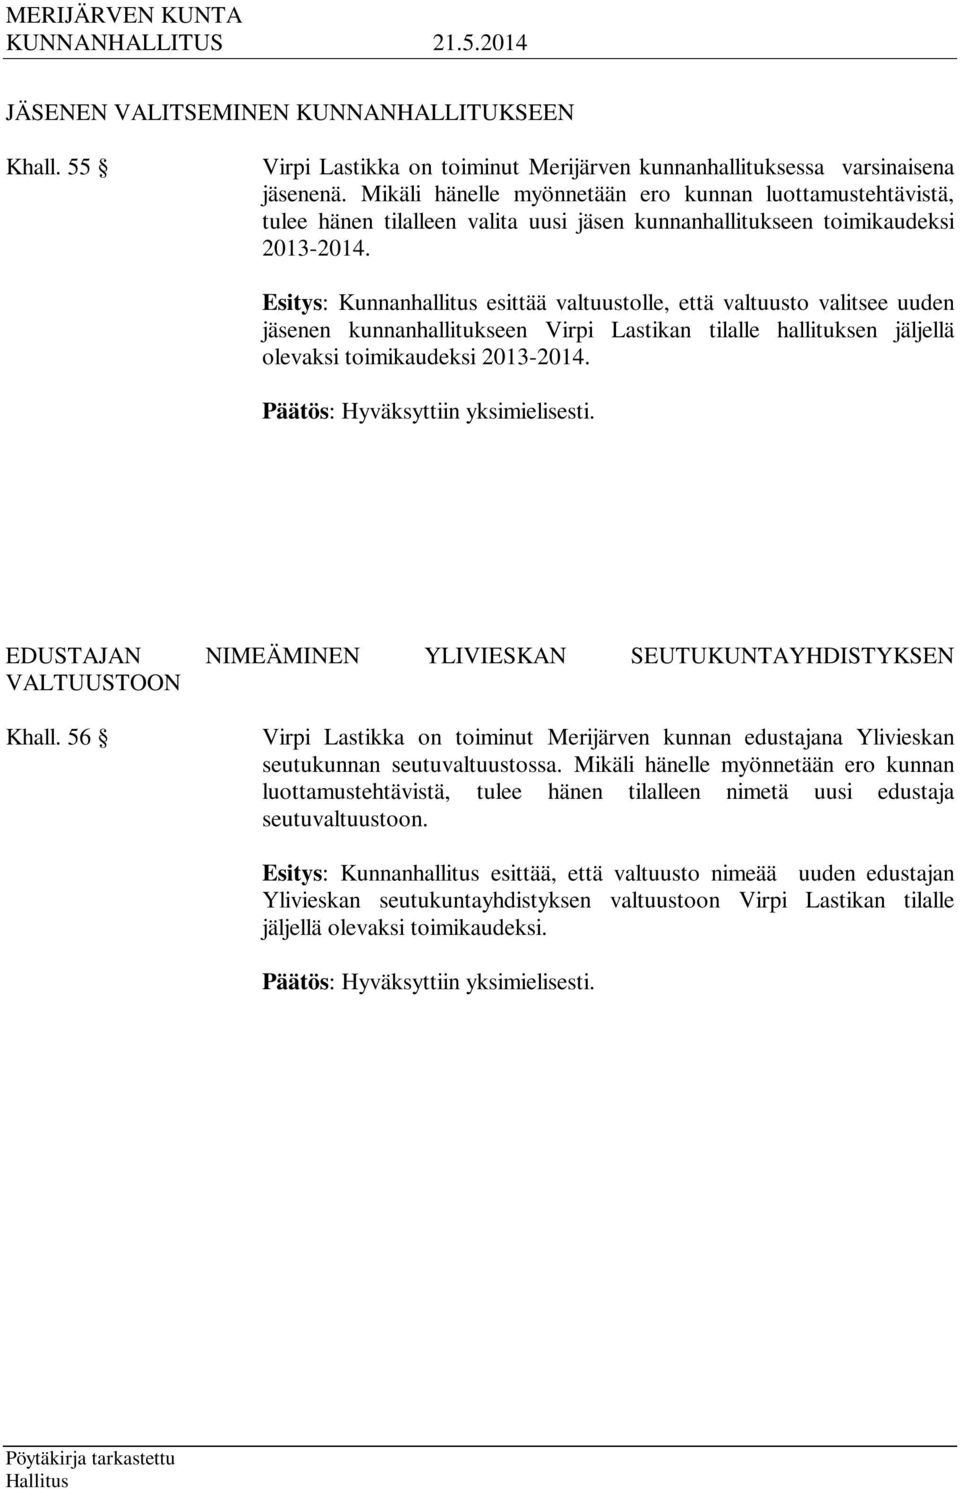 Esitys: Kunnanhallitus esittää valtuustolle, että valtuusto valitsee uuden jäsenen kunnanhallitukseen Virpi Lastikan tilalle hallituksen jäljellä olevaksi toimikaudeksi 2013-2014.